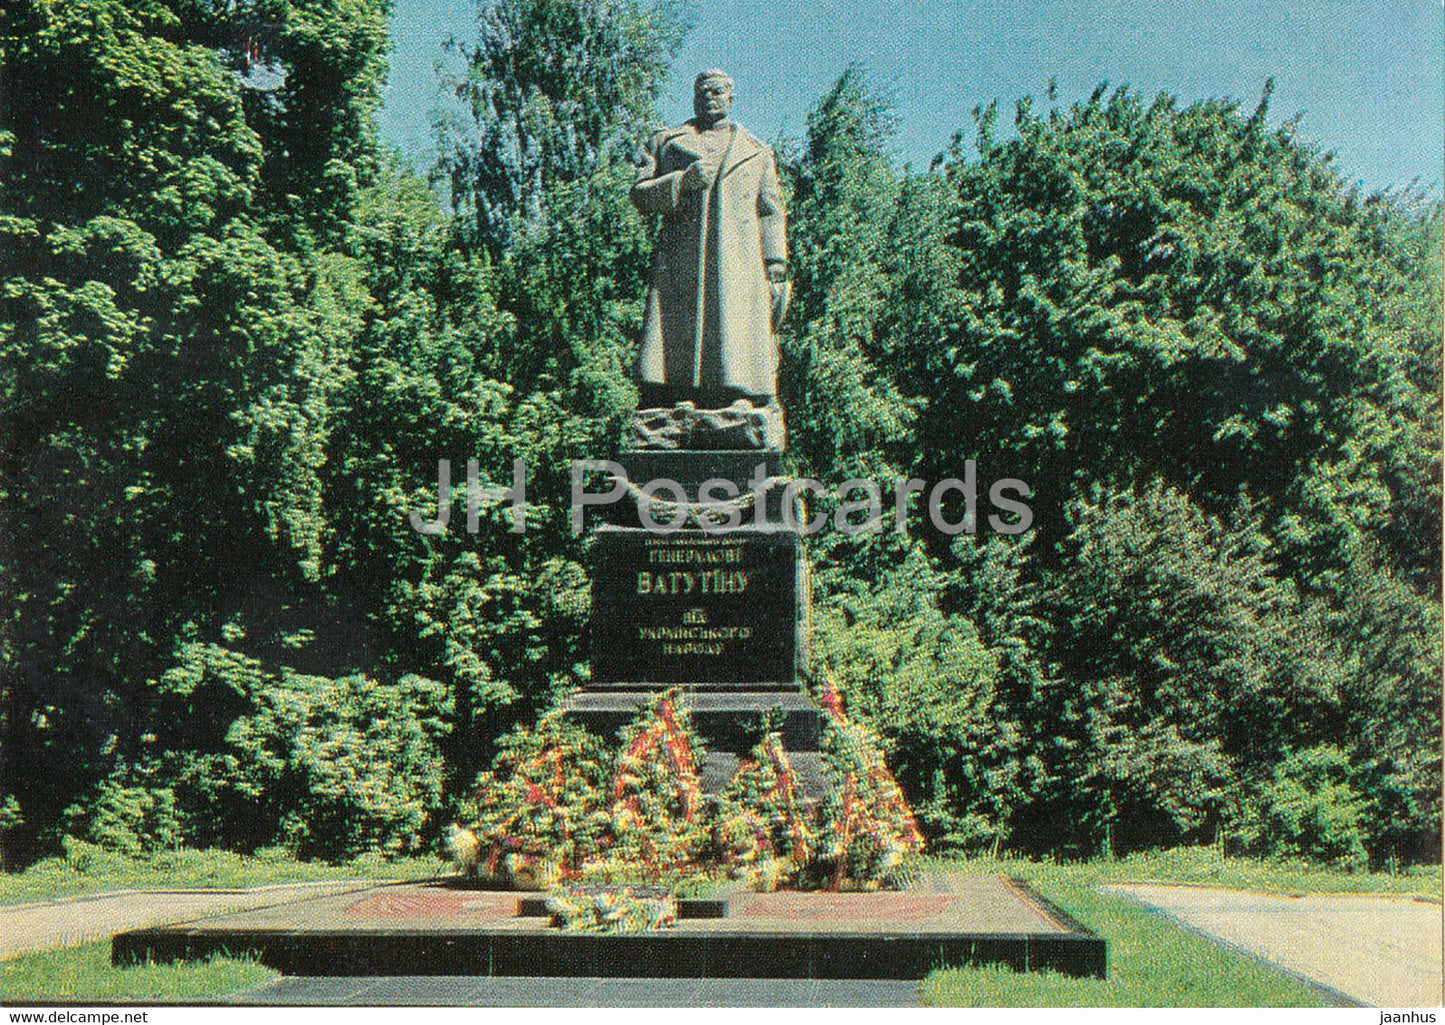 Kyiv - Kiev - monument to general N. Vatutin - AVIA - postal stationery - 1977 - Ukraine USSR - unused - JH Postcards